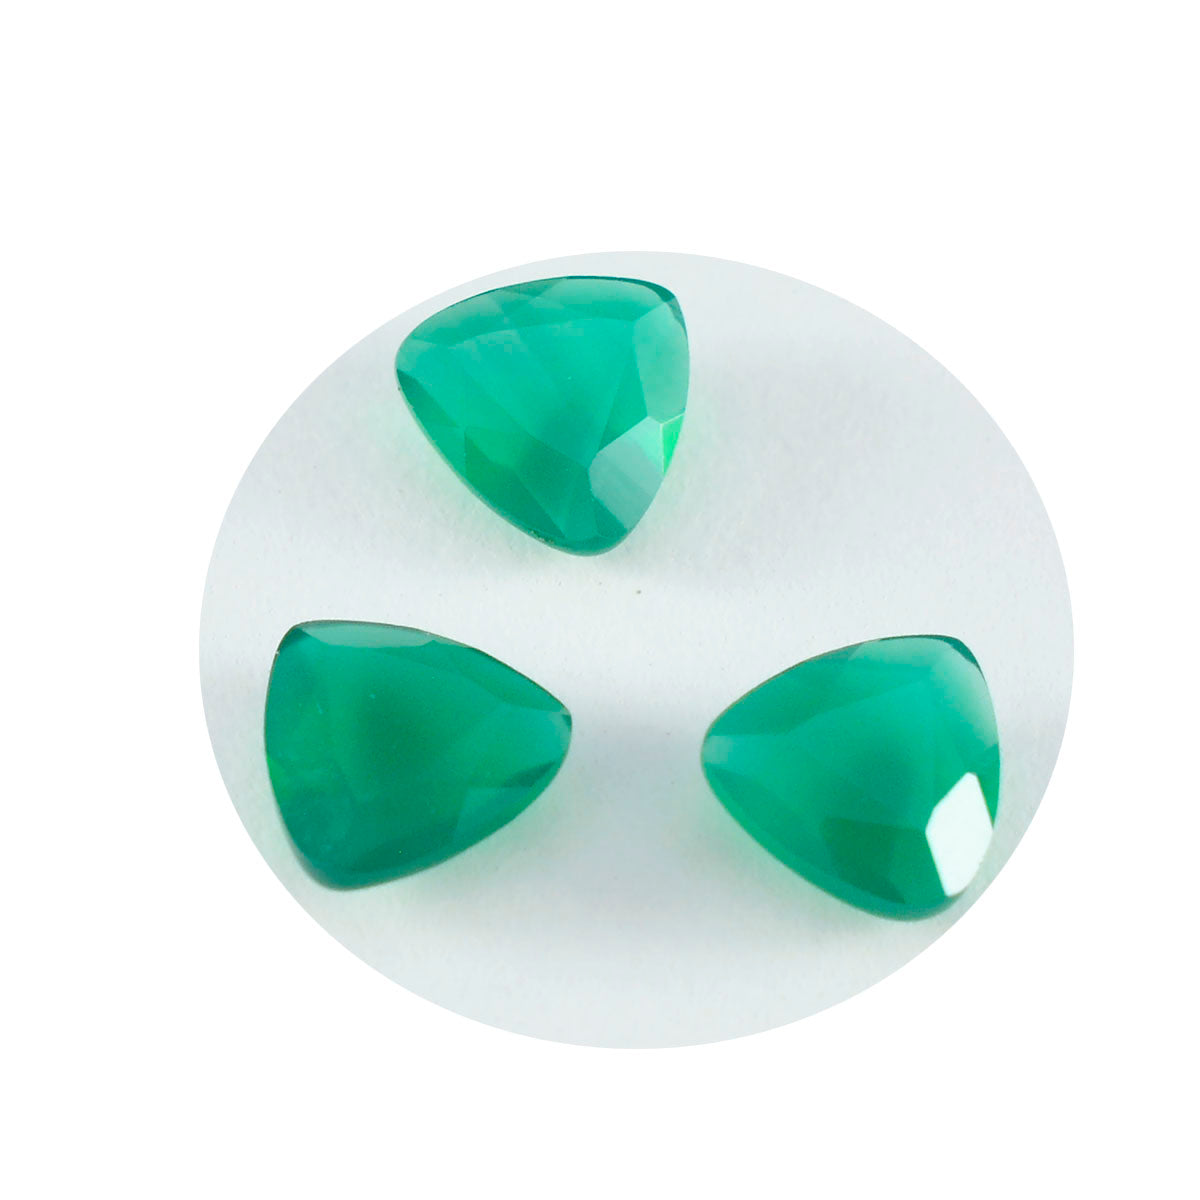 riyogems 1 шт. натуральный зеленый оникс граненый 11x11 мм форма триллиона потрясающего качества, свободный драгоценный камень